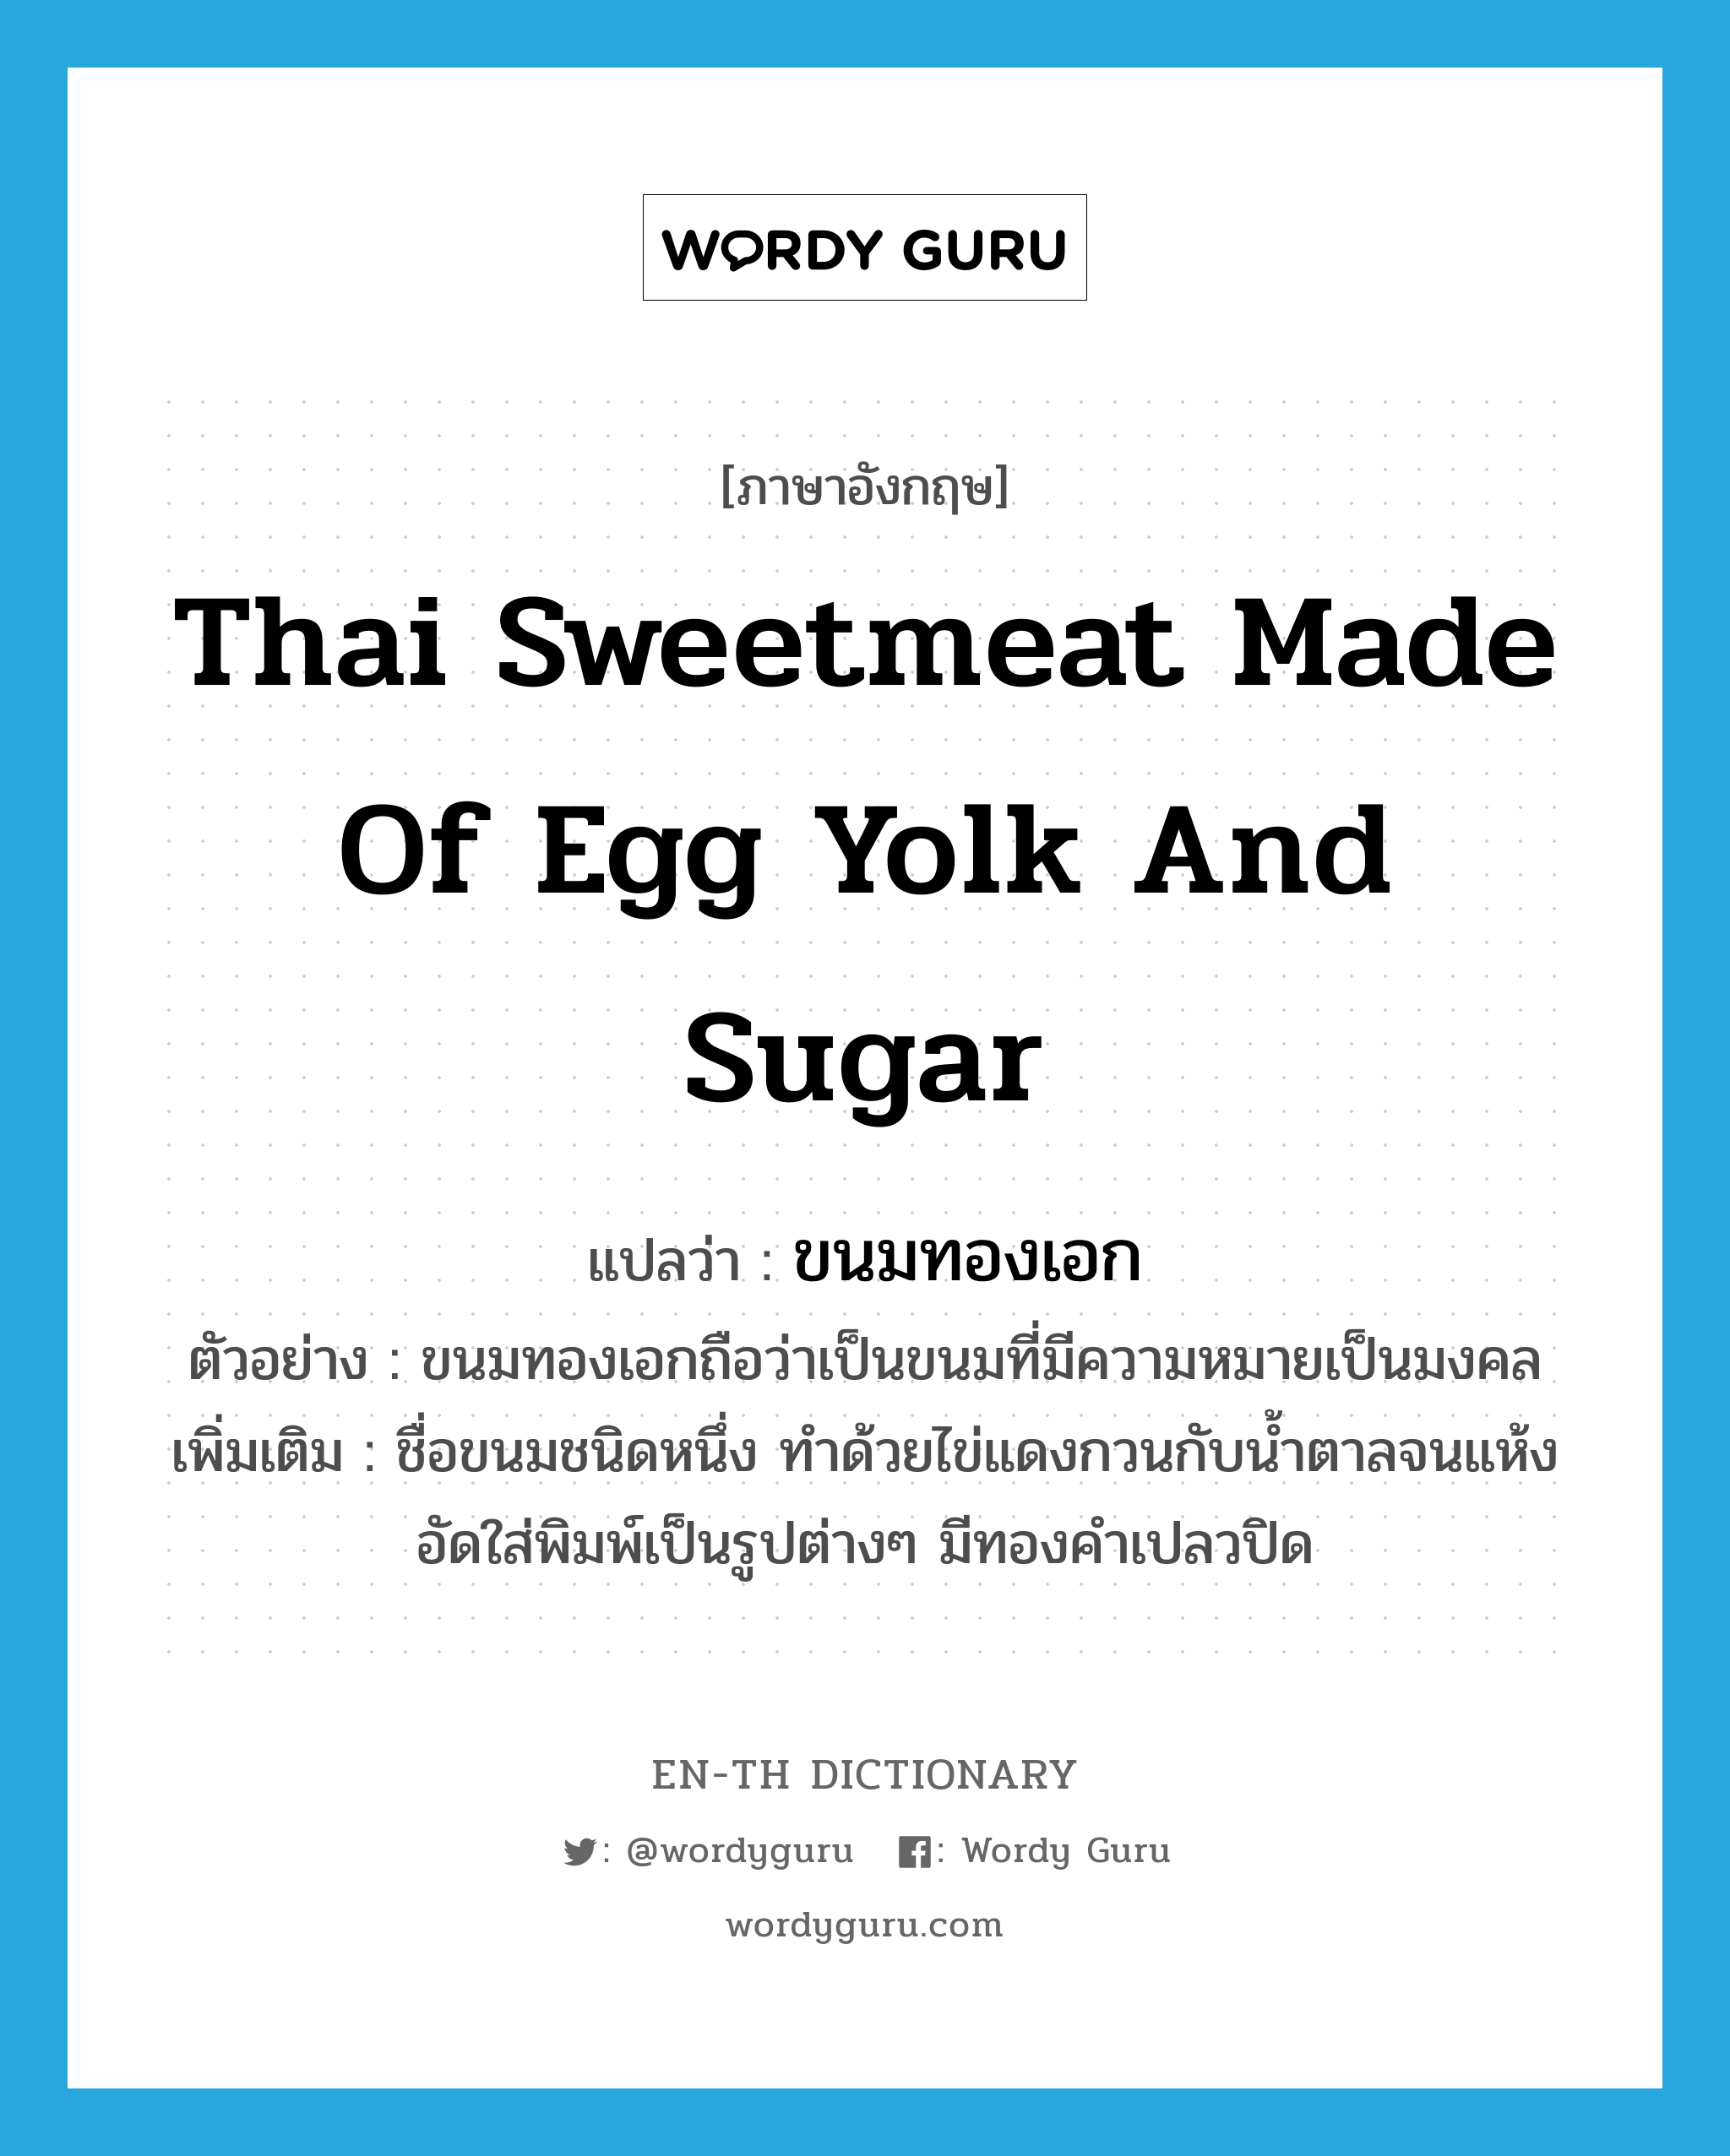 ขนมทองเอก ภาษาอังกฤษ?, คำศัพท์ภาษาอังกฤษ ขนมทองเอก แปลว่า Thai sweetmeat made of egg yolk and sugar ประเภท N ตัวอย่าง ขนมทองเอกถือว่าเป็นขนมที่มีความหมายเป็นมงคล เพิ่มเติม ชื่อขนมชนิดหนึ่ง ทำด้วยไข่แดงกวนกับน้ำตาลจนแห้ง อัดใส่พิมพ์เป็นรูปต่างๆ มีทองคำเปลวปิด หมวด N